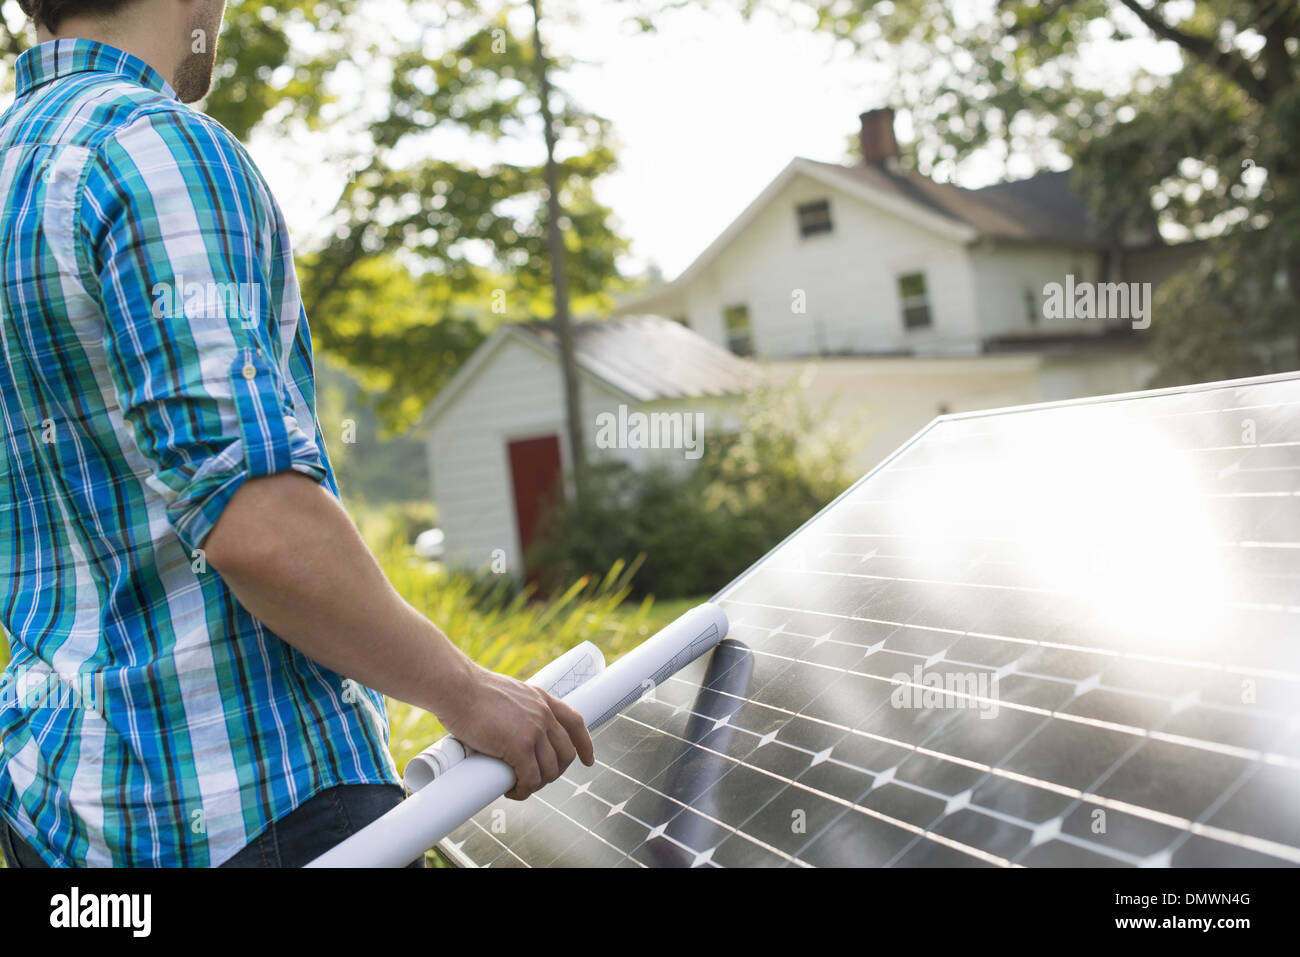 A man using a plan to place a solar panel in a farmhouse garden. Stock Photo